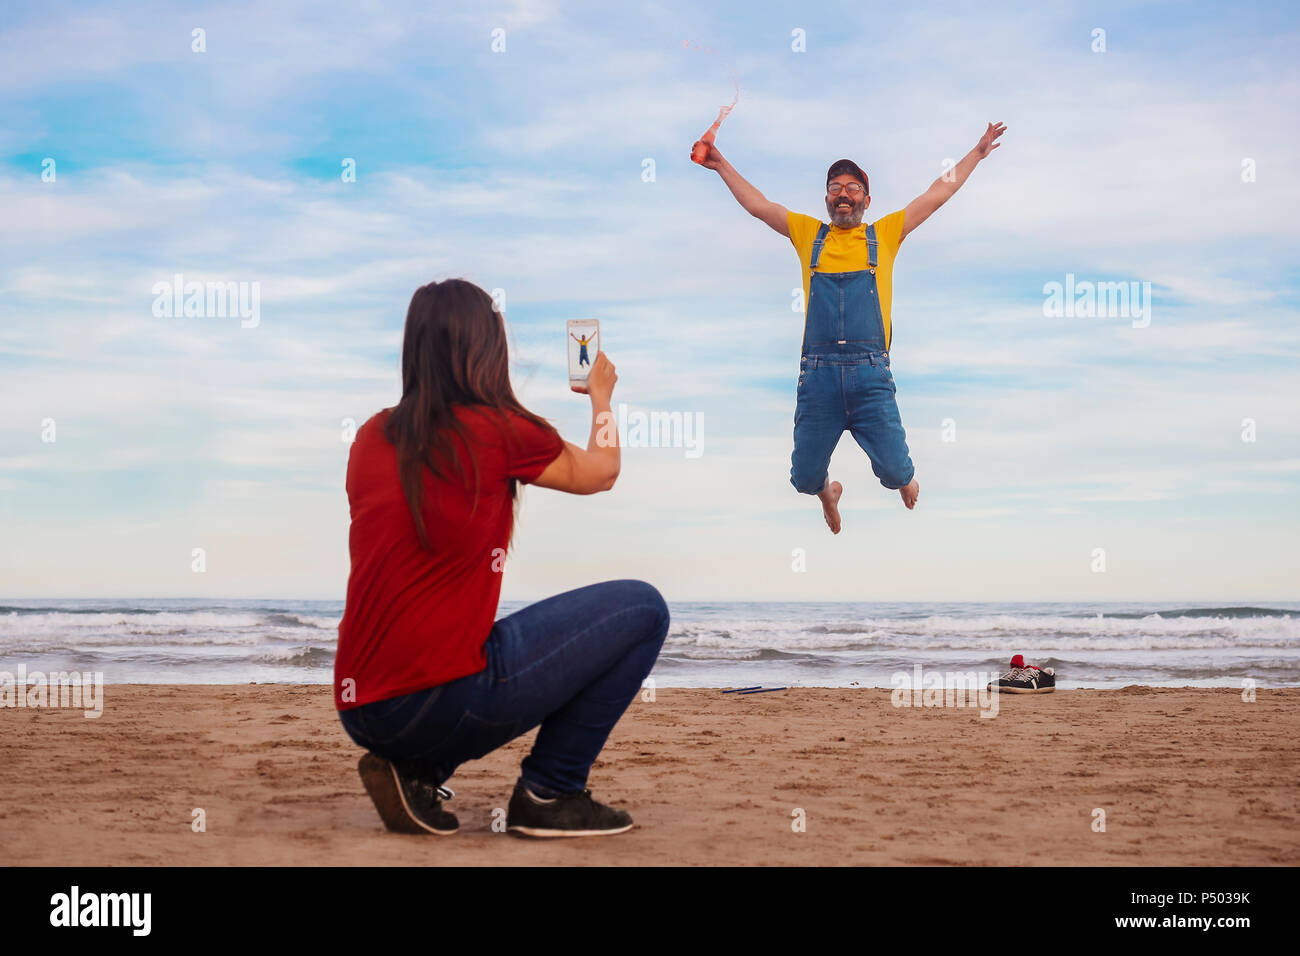 Woman taking photo smartphone d'homme heureux de sauter sur la plage Banque D'Images